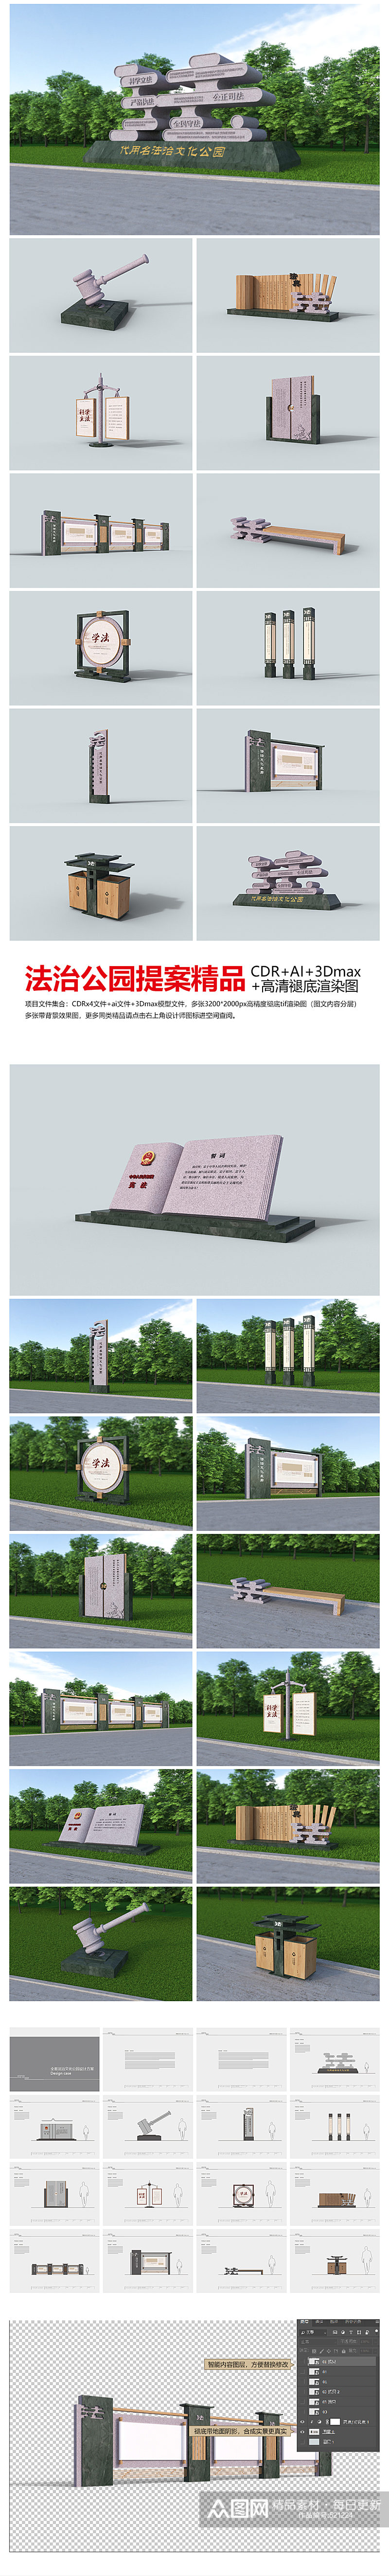 宪法日 法治文化公园导视设计方案素材